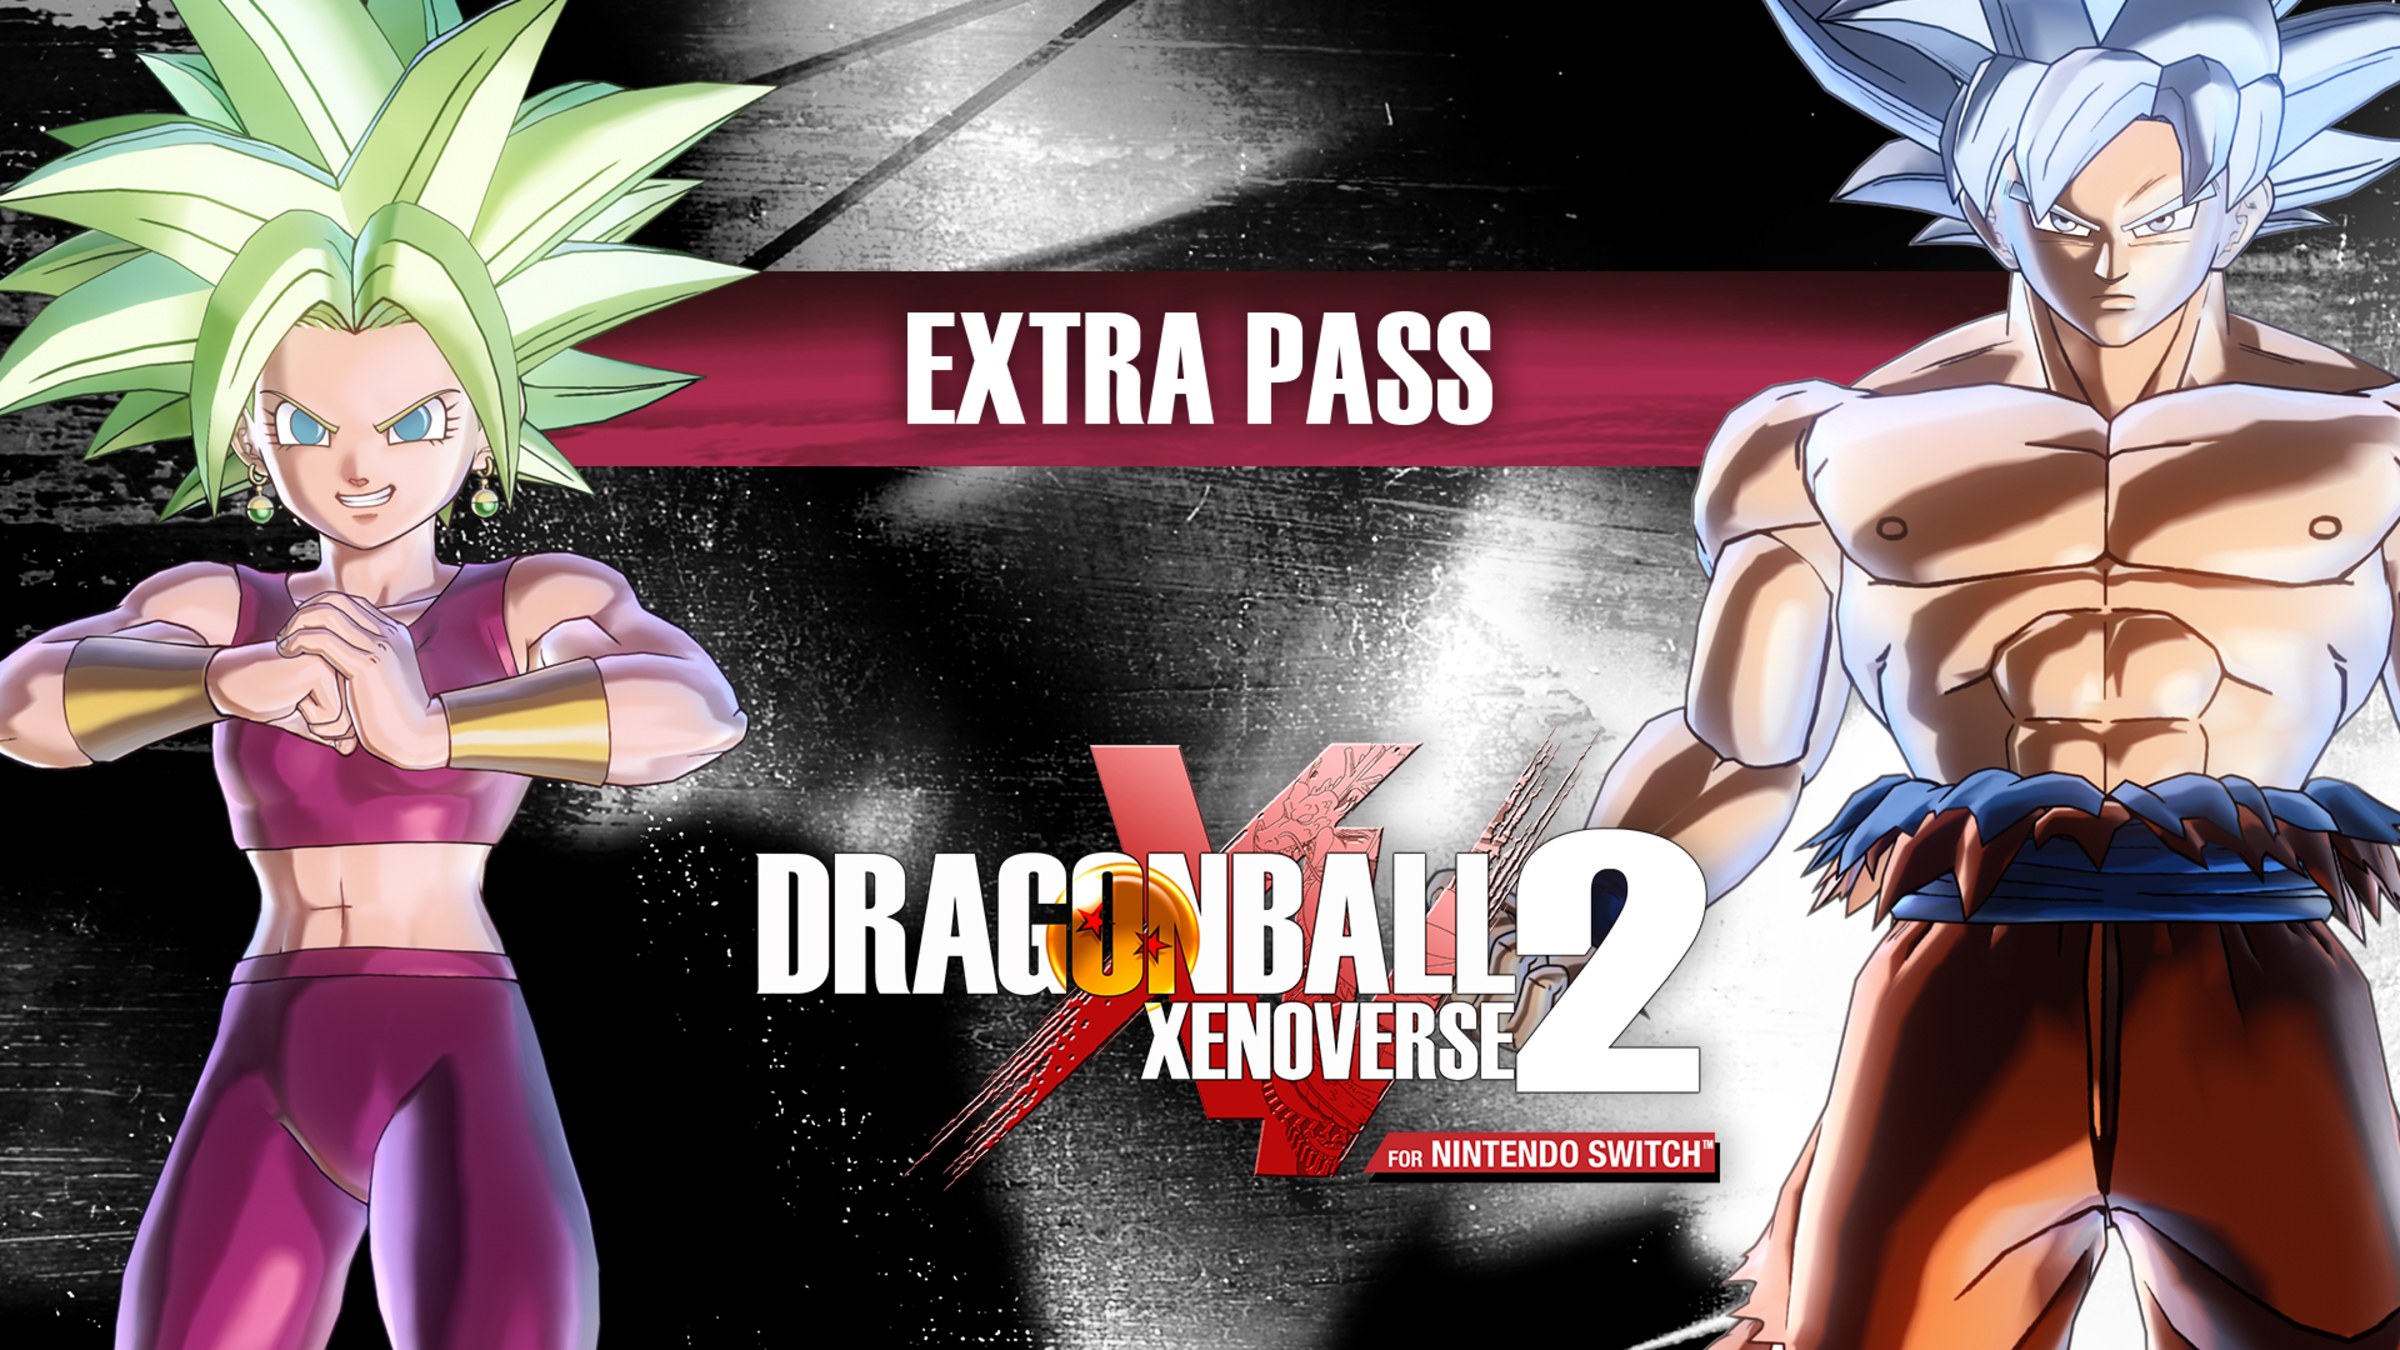 DRAGON BALL XENOVERSE 2 - Extra Pass for Nintendo Switch - Nintendo  Official Site